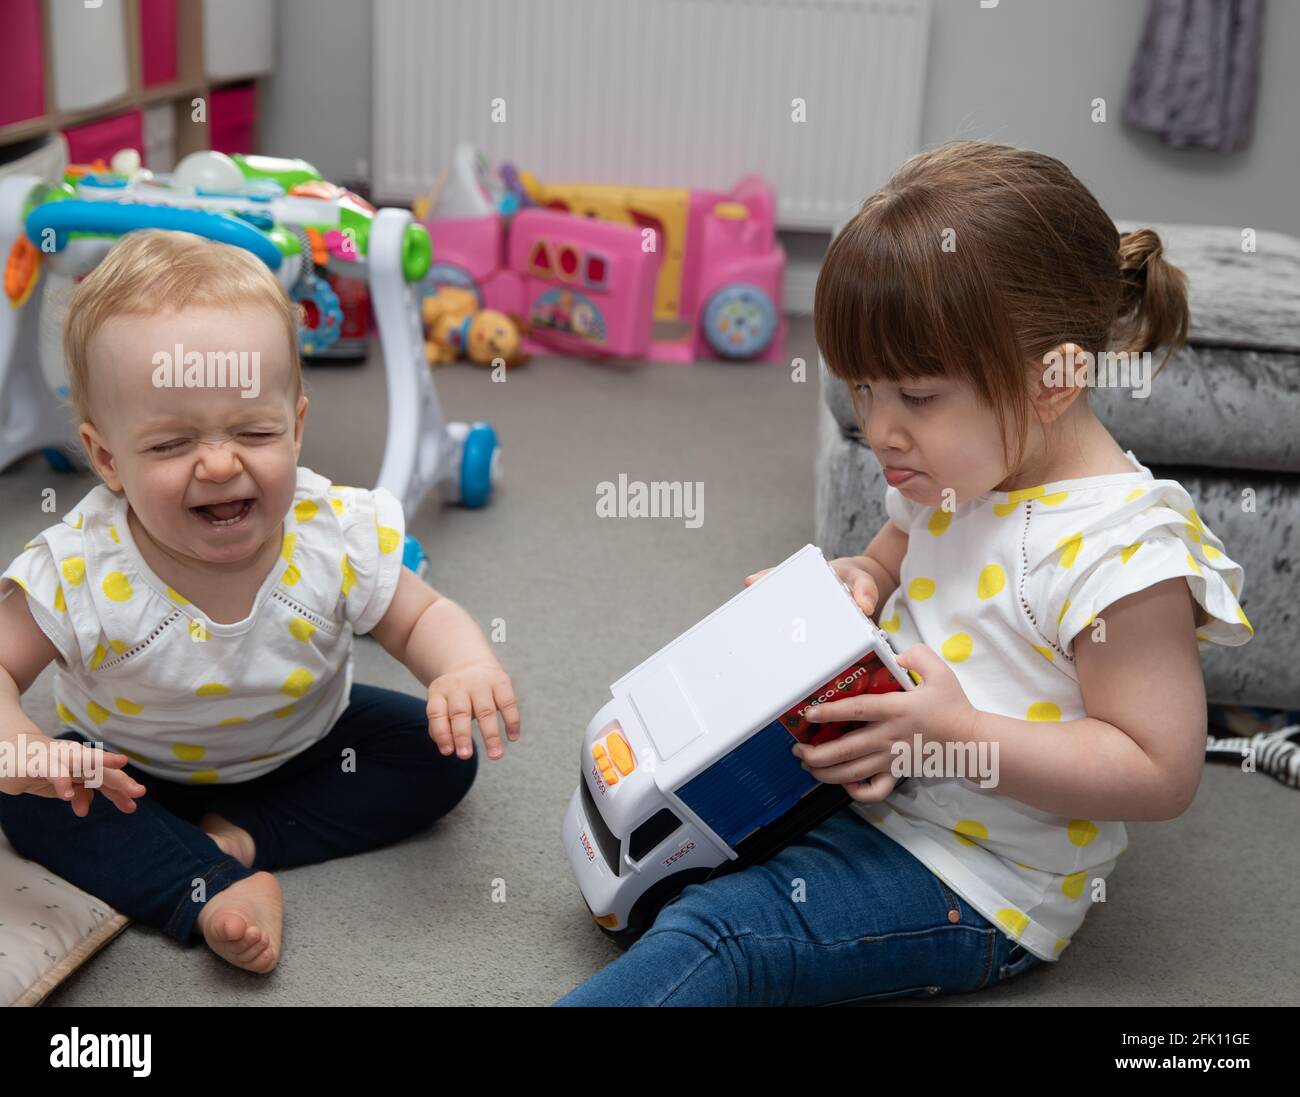 Ein kleines Kind weint, wie ein älteres Kind einen nimmt Spielzeug weg von ihr Stockfoto